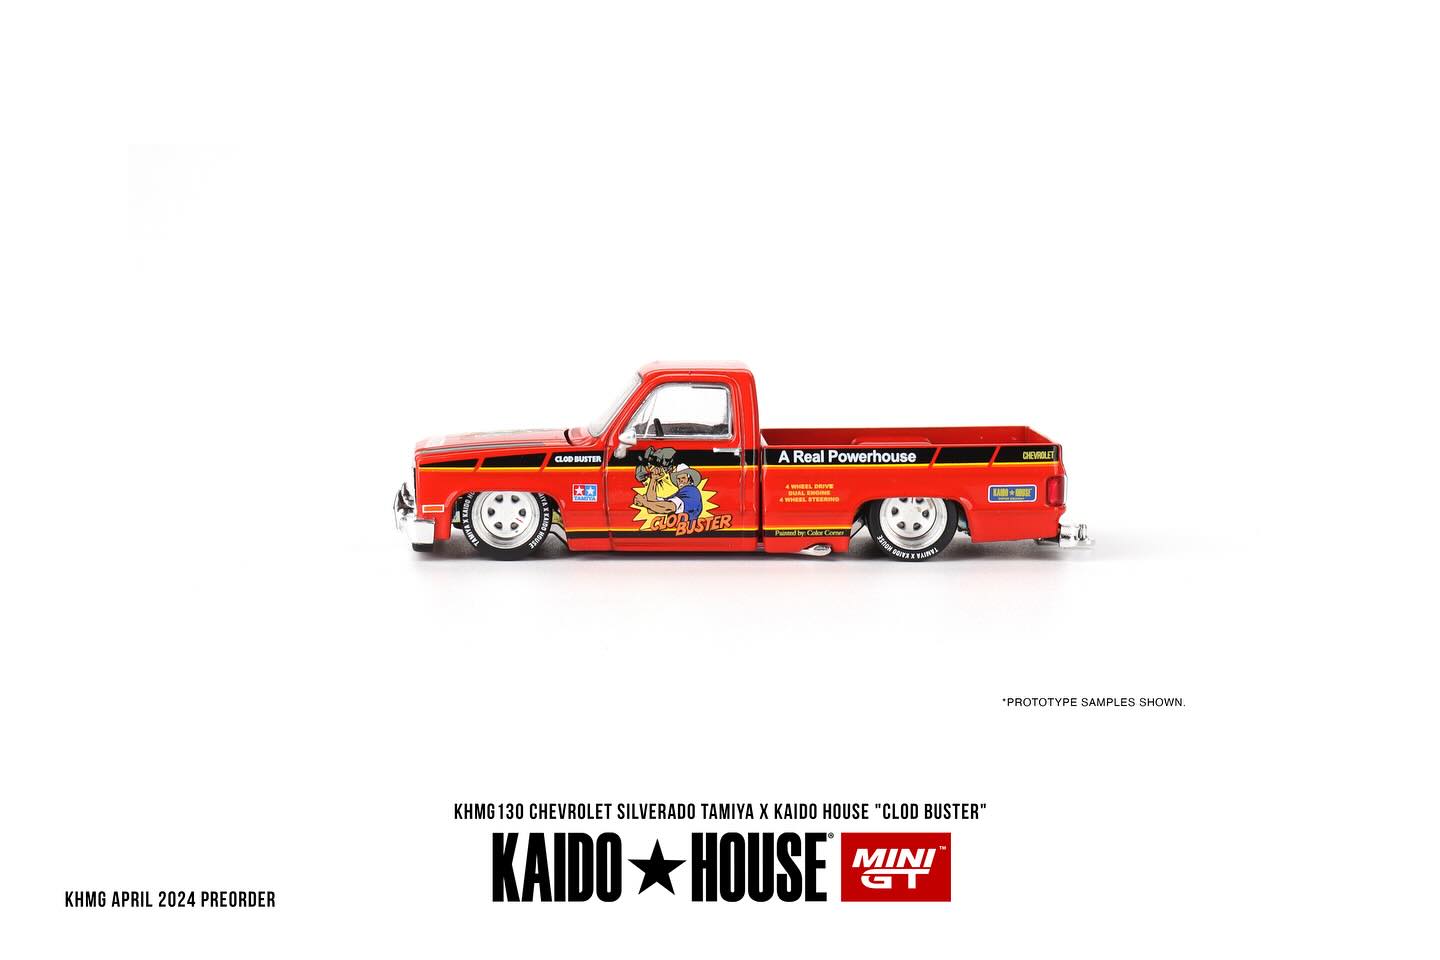 Mini GT x Kaido House 1983 Chevy Silverado Tamiya x Kaido House "Clod Buster"